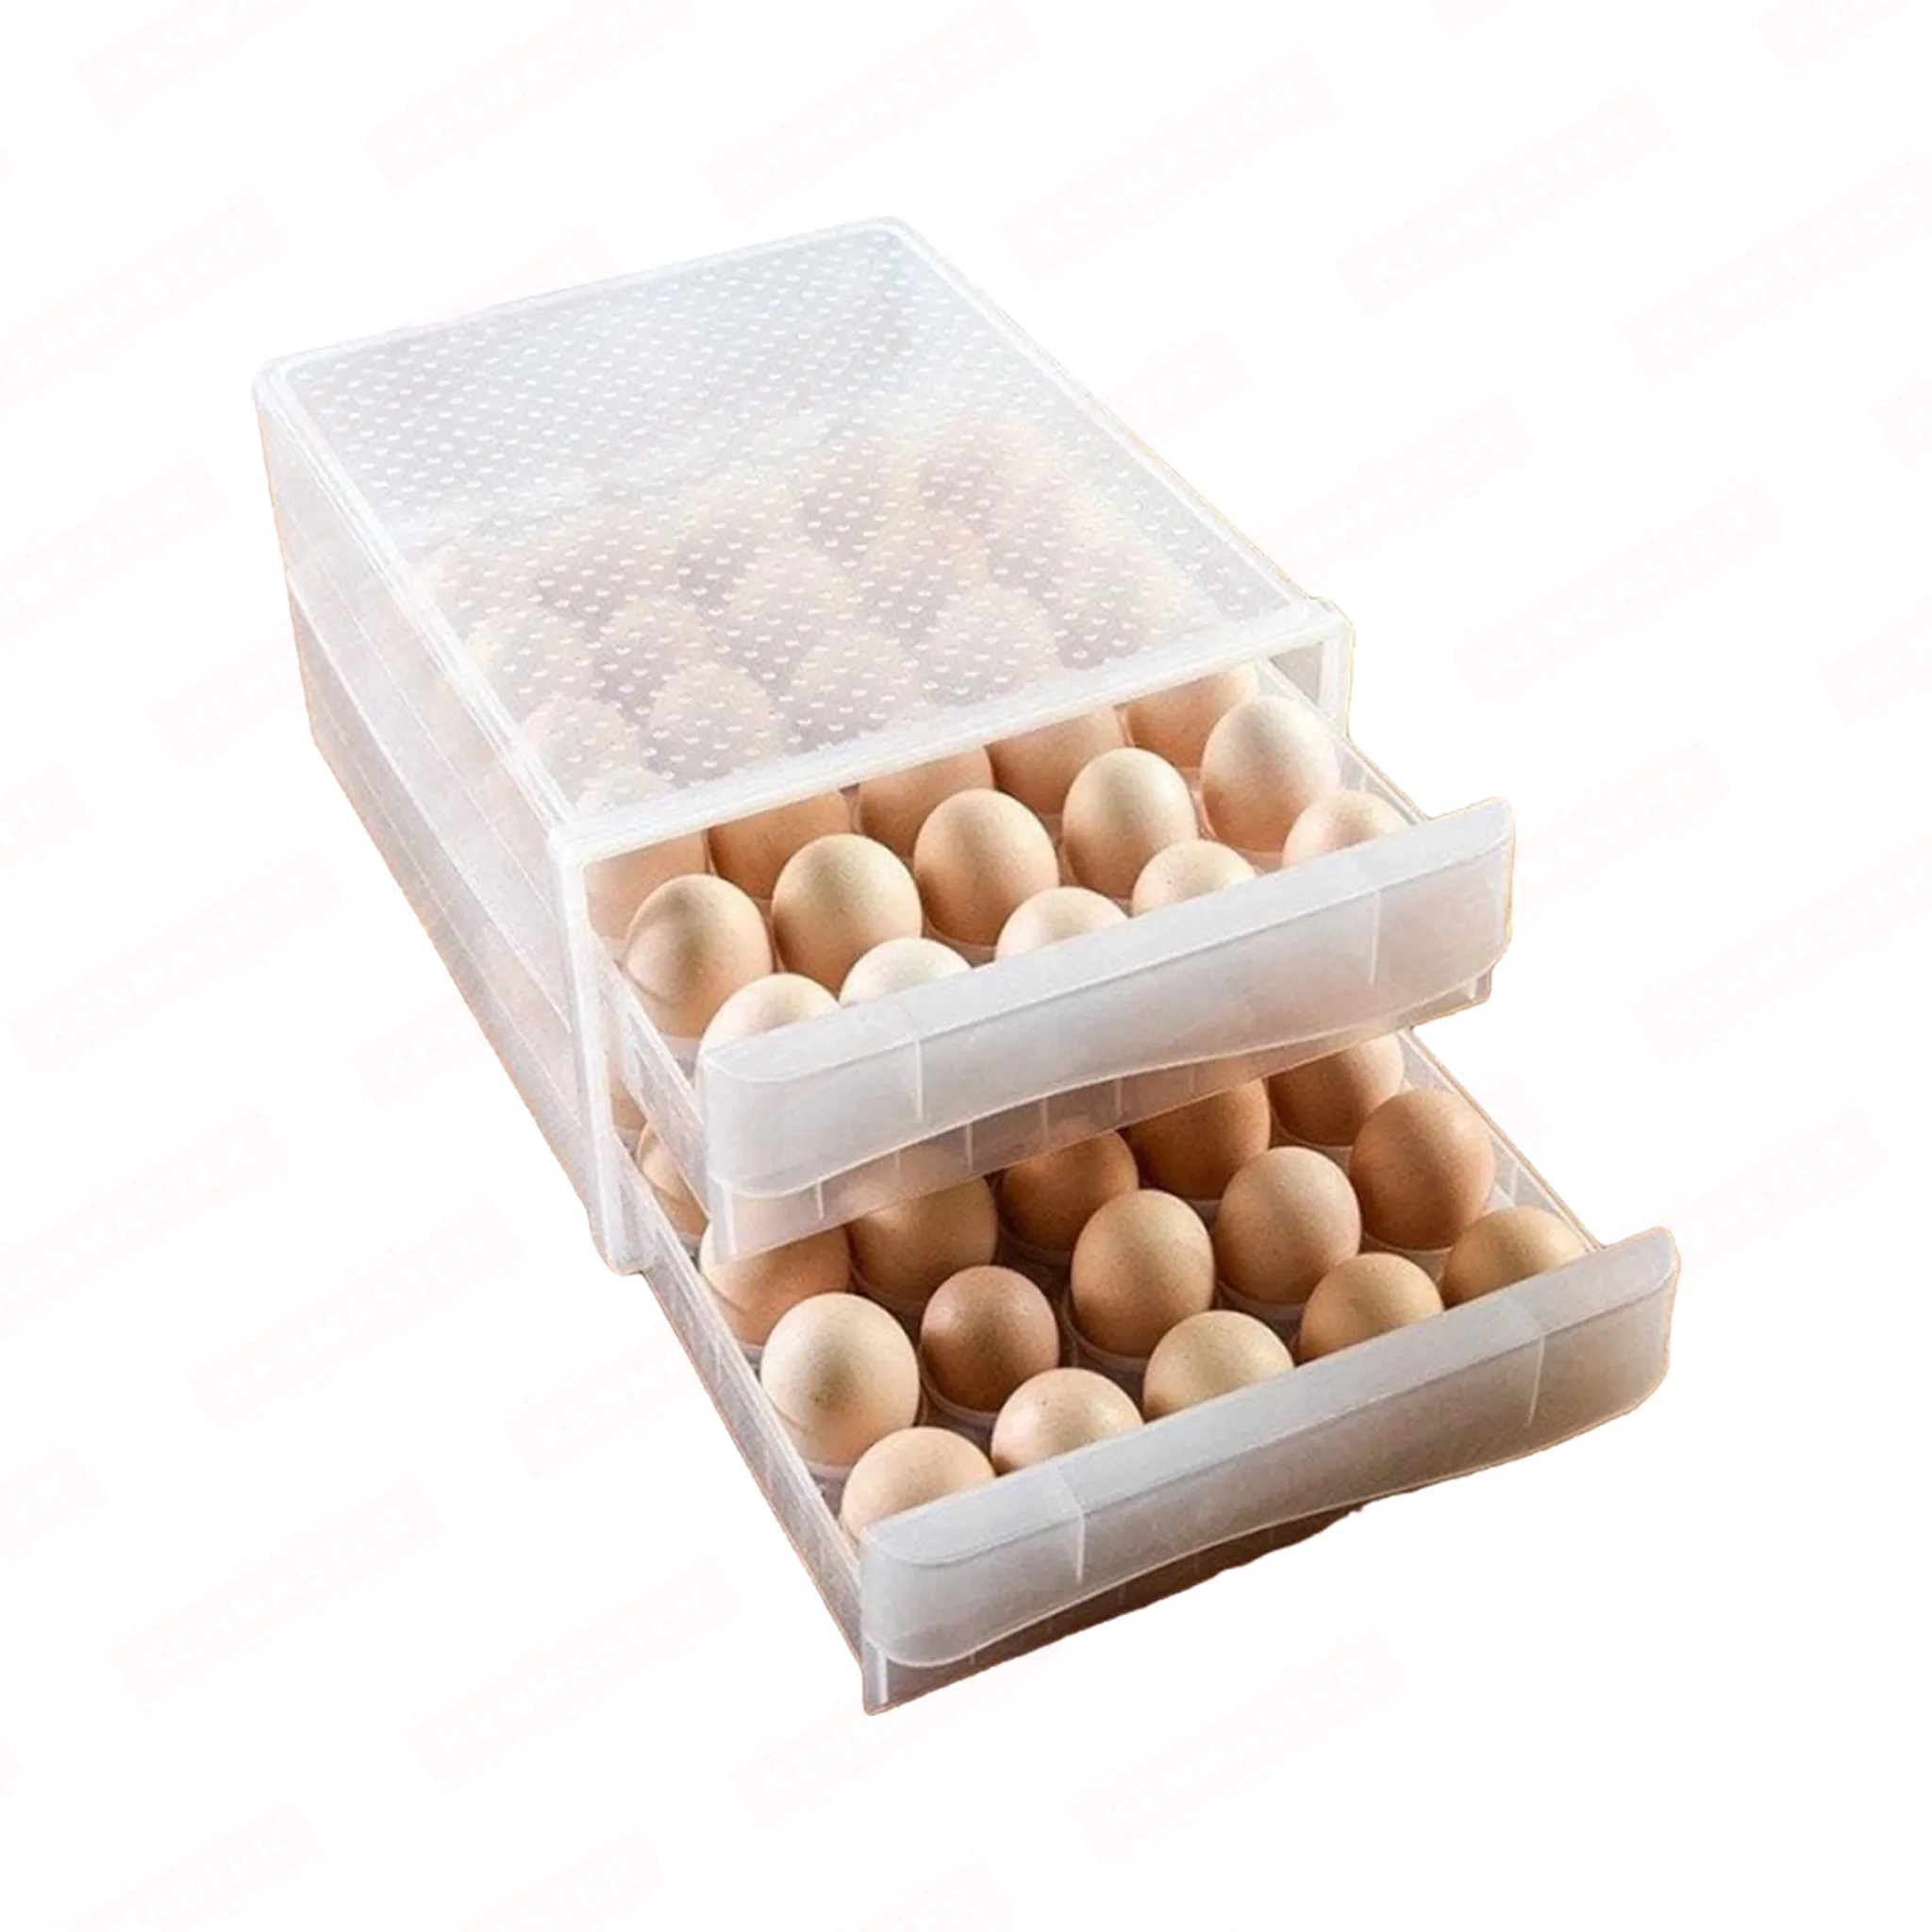 tempat penyimpanan telur isi 60 slot / rak telur plastik / egg